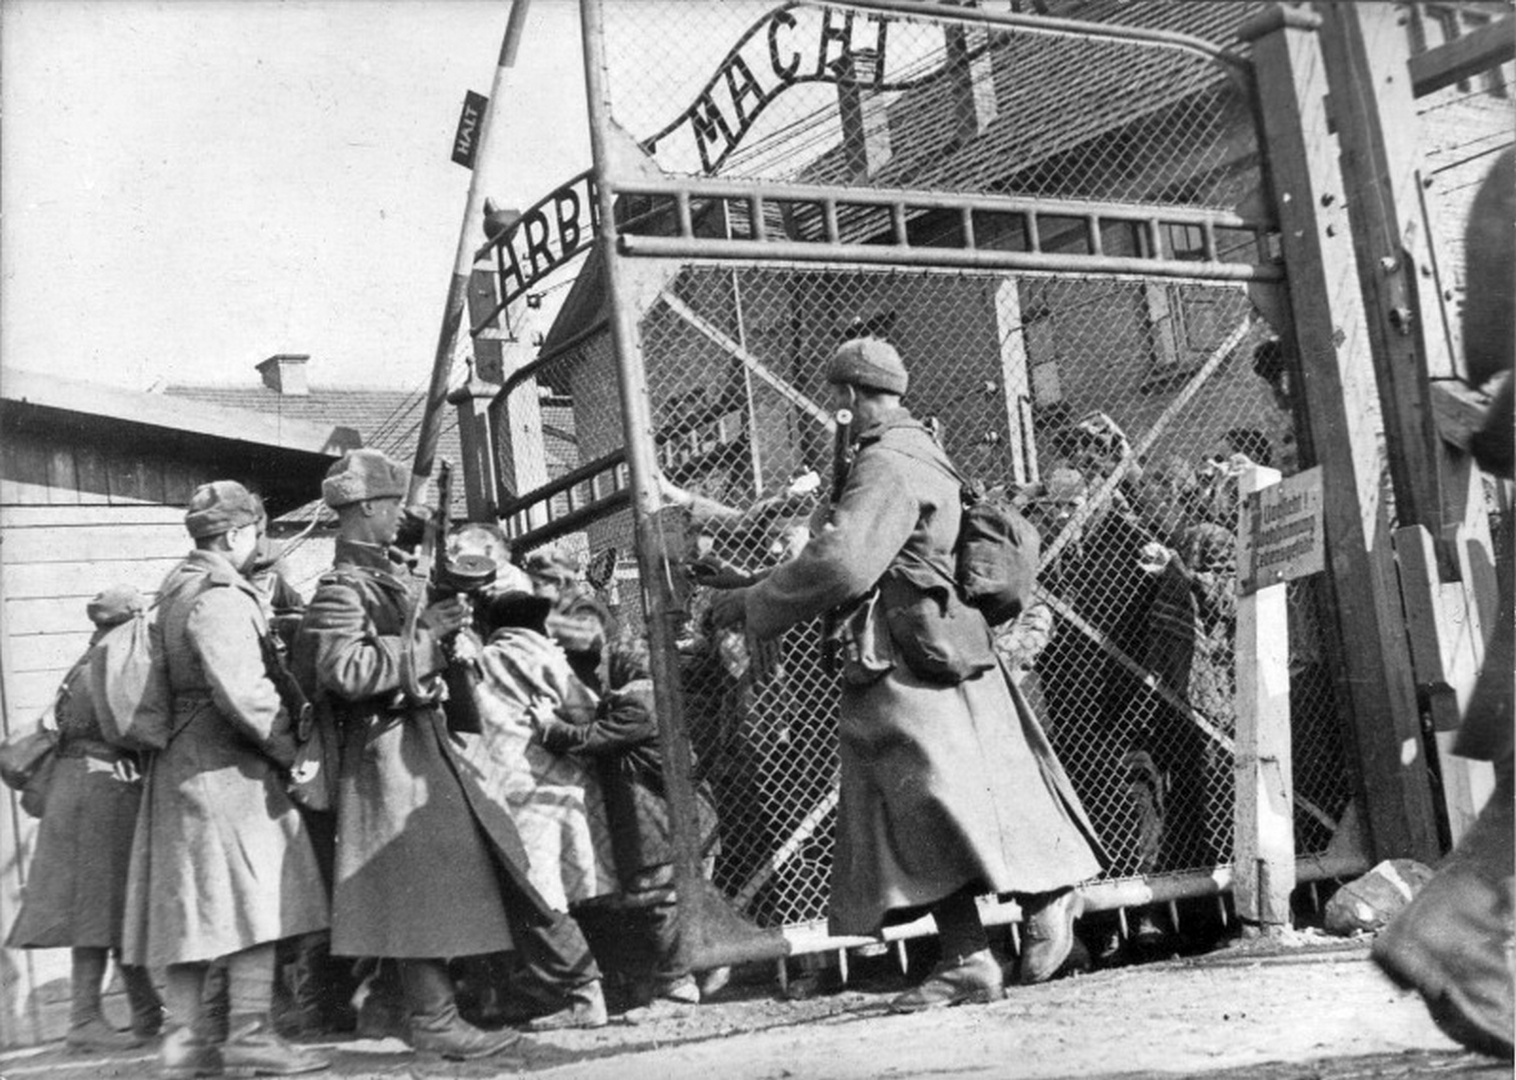 27 Января 1945 освобождение узников Освенцима